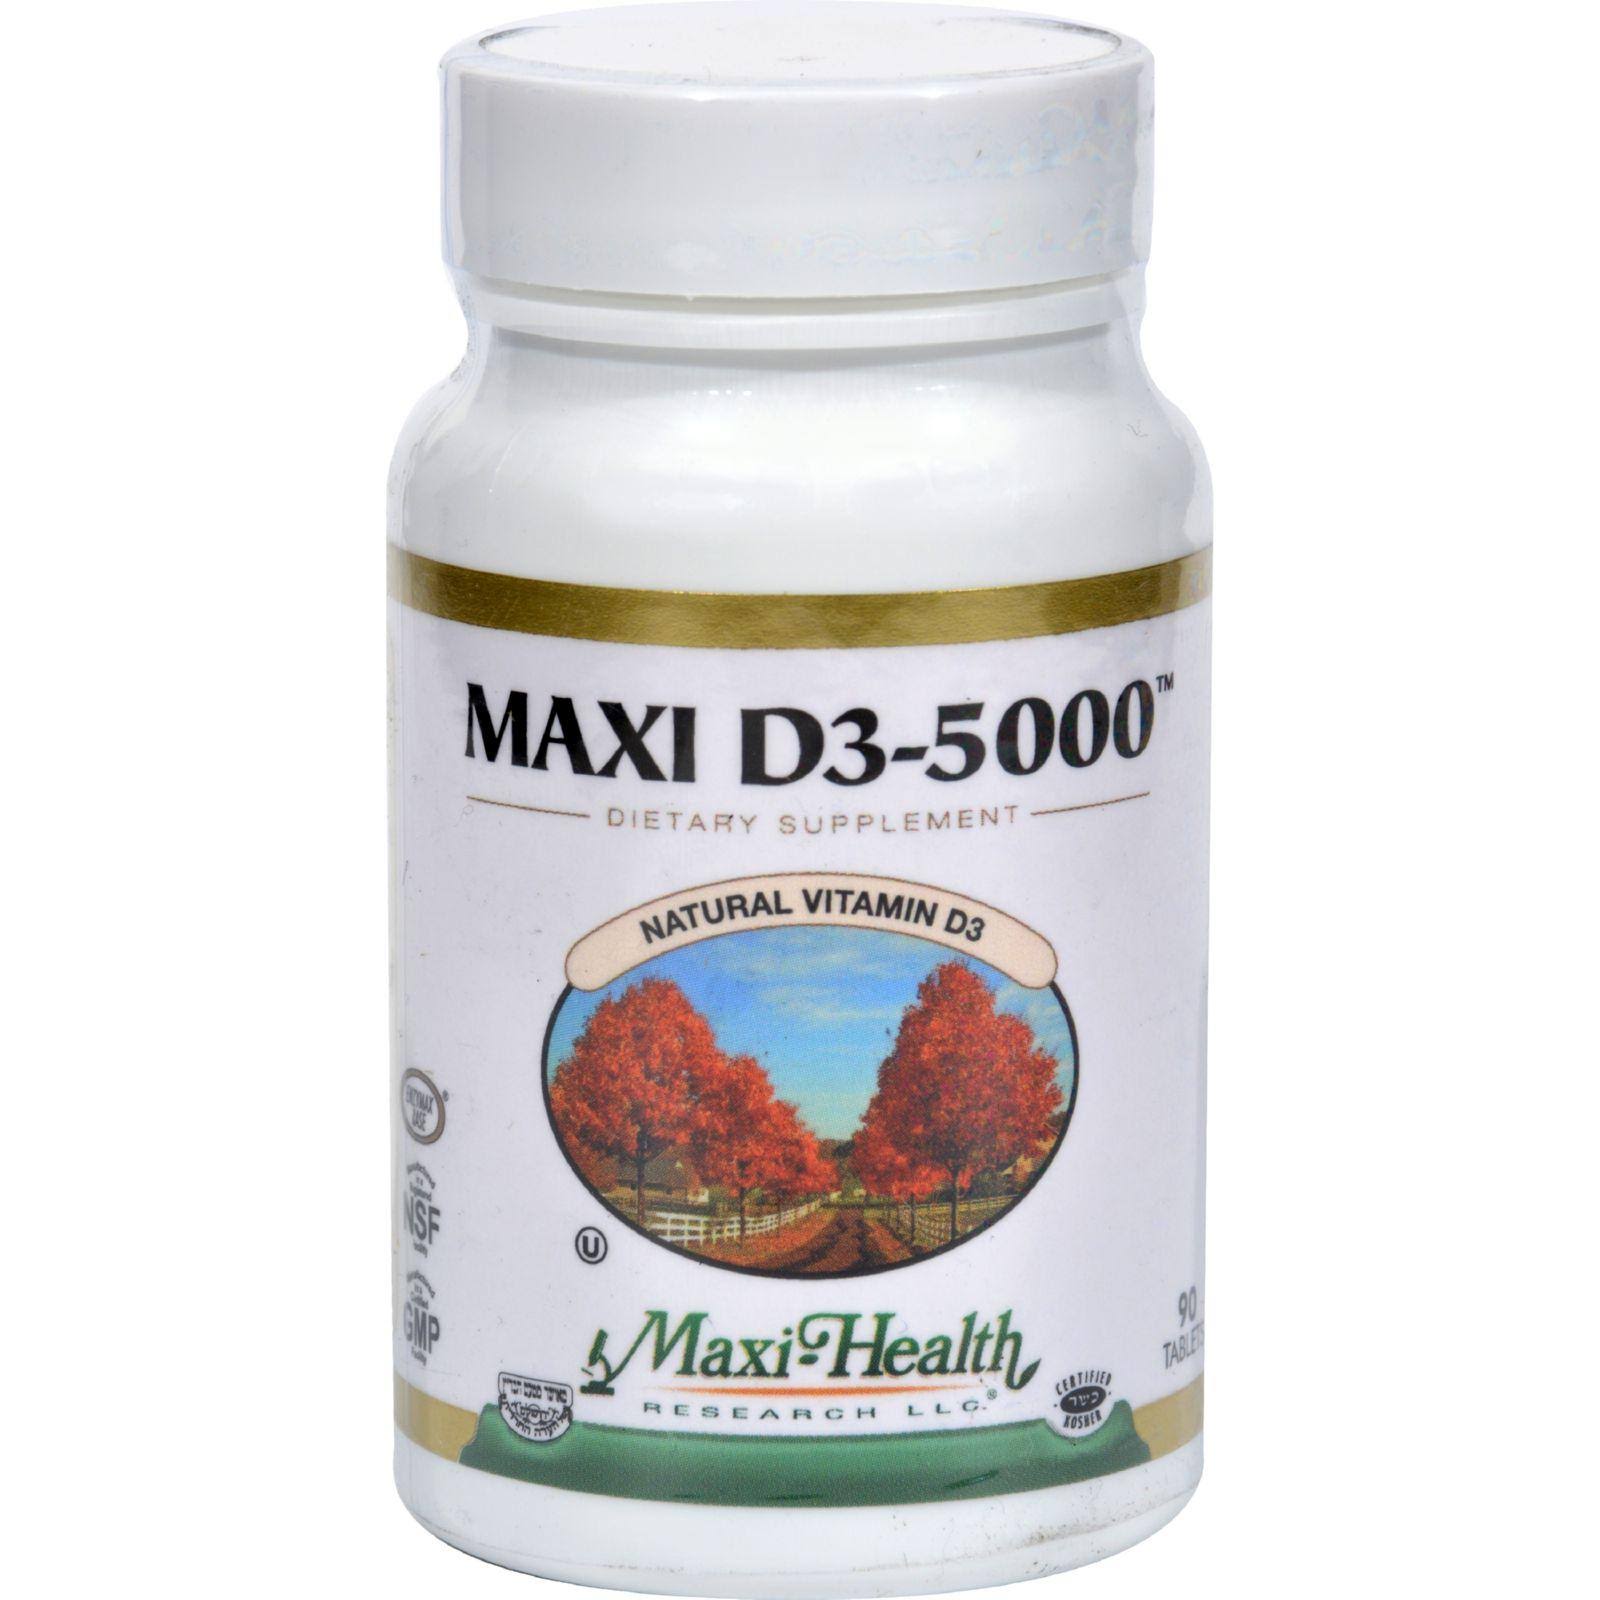 Maxi Health Natural Vitamin D3 5000 IU Nutrition Supplement - 90ct